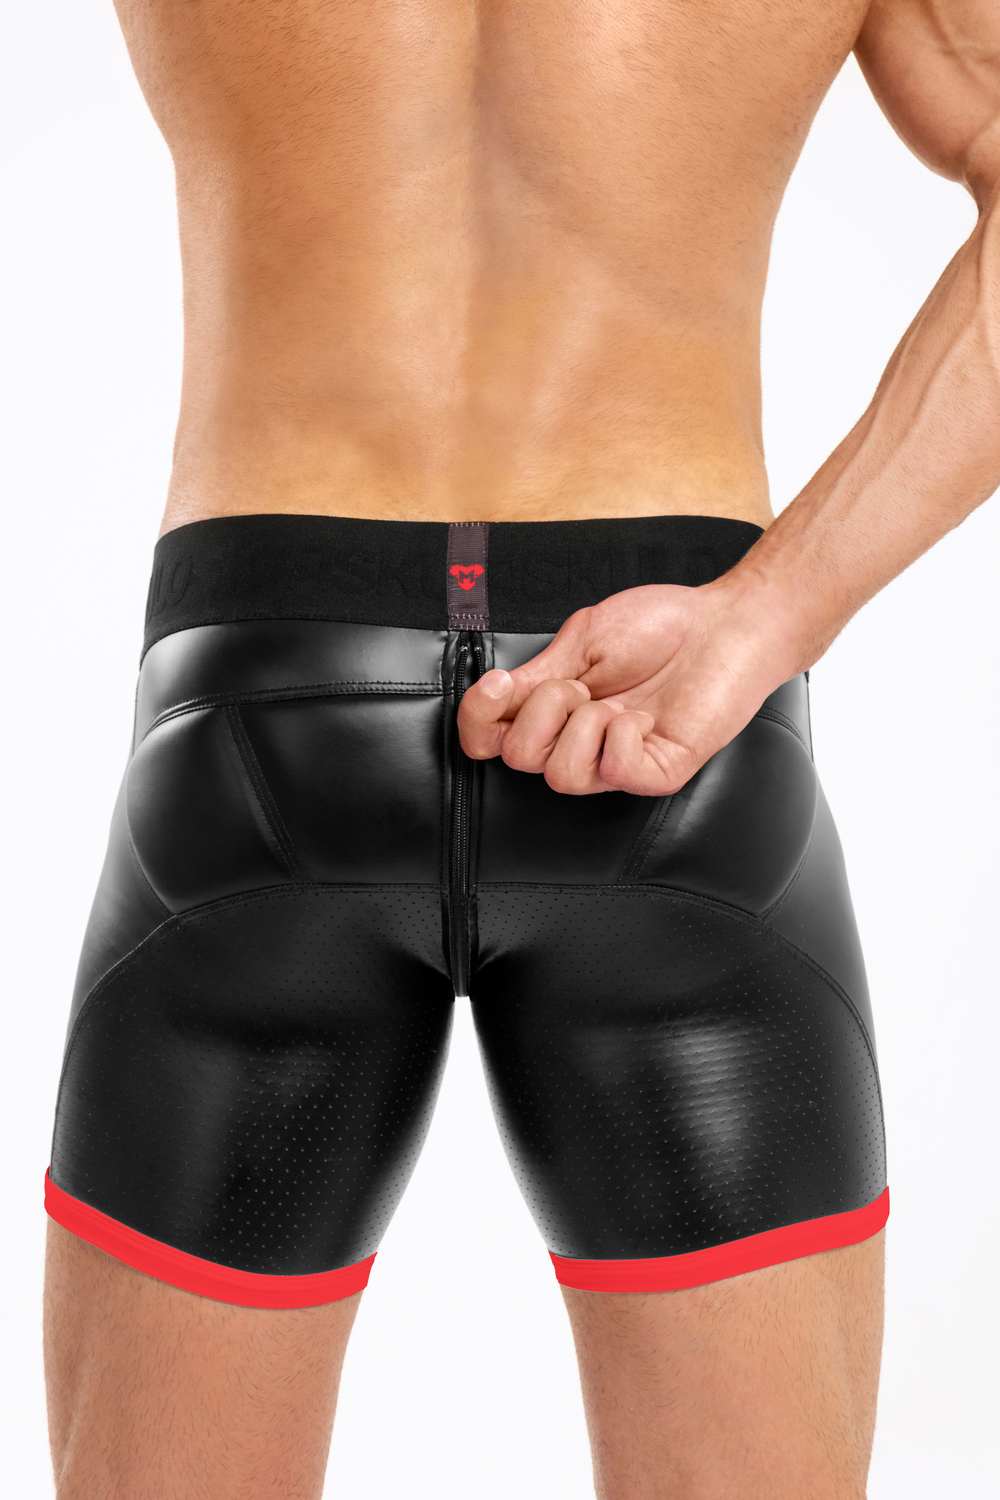 Basic Shorts mit Polstern. Reißverschluss hinten. Schwarz+Rot